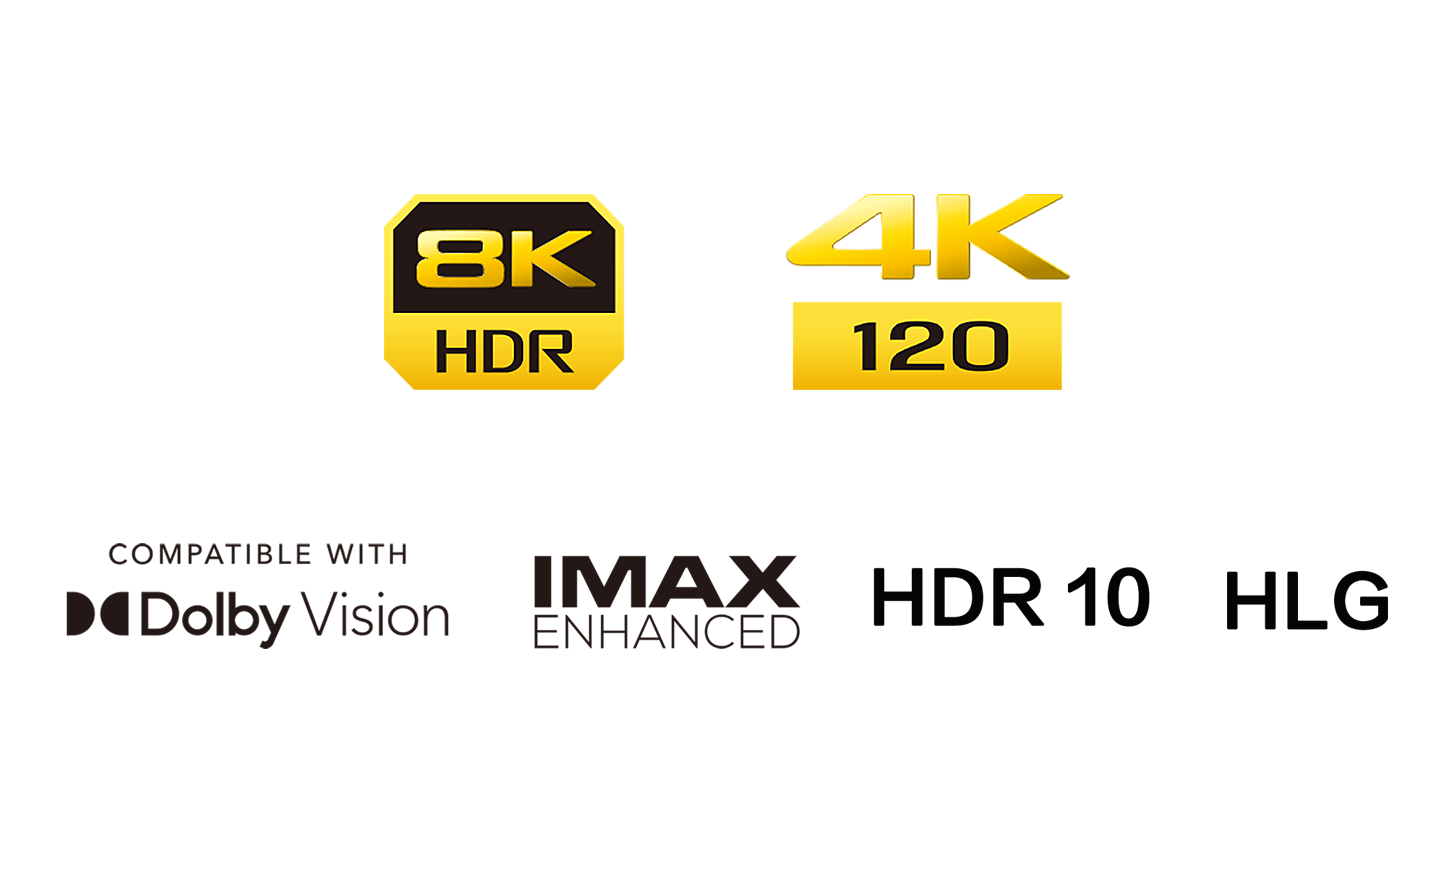 Logotip 8K HDR, logotip4k 120, logotip združljivosti z Dolby Vision, logotip HDR 10, logotip IMAX Enhanced, logotip HLG